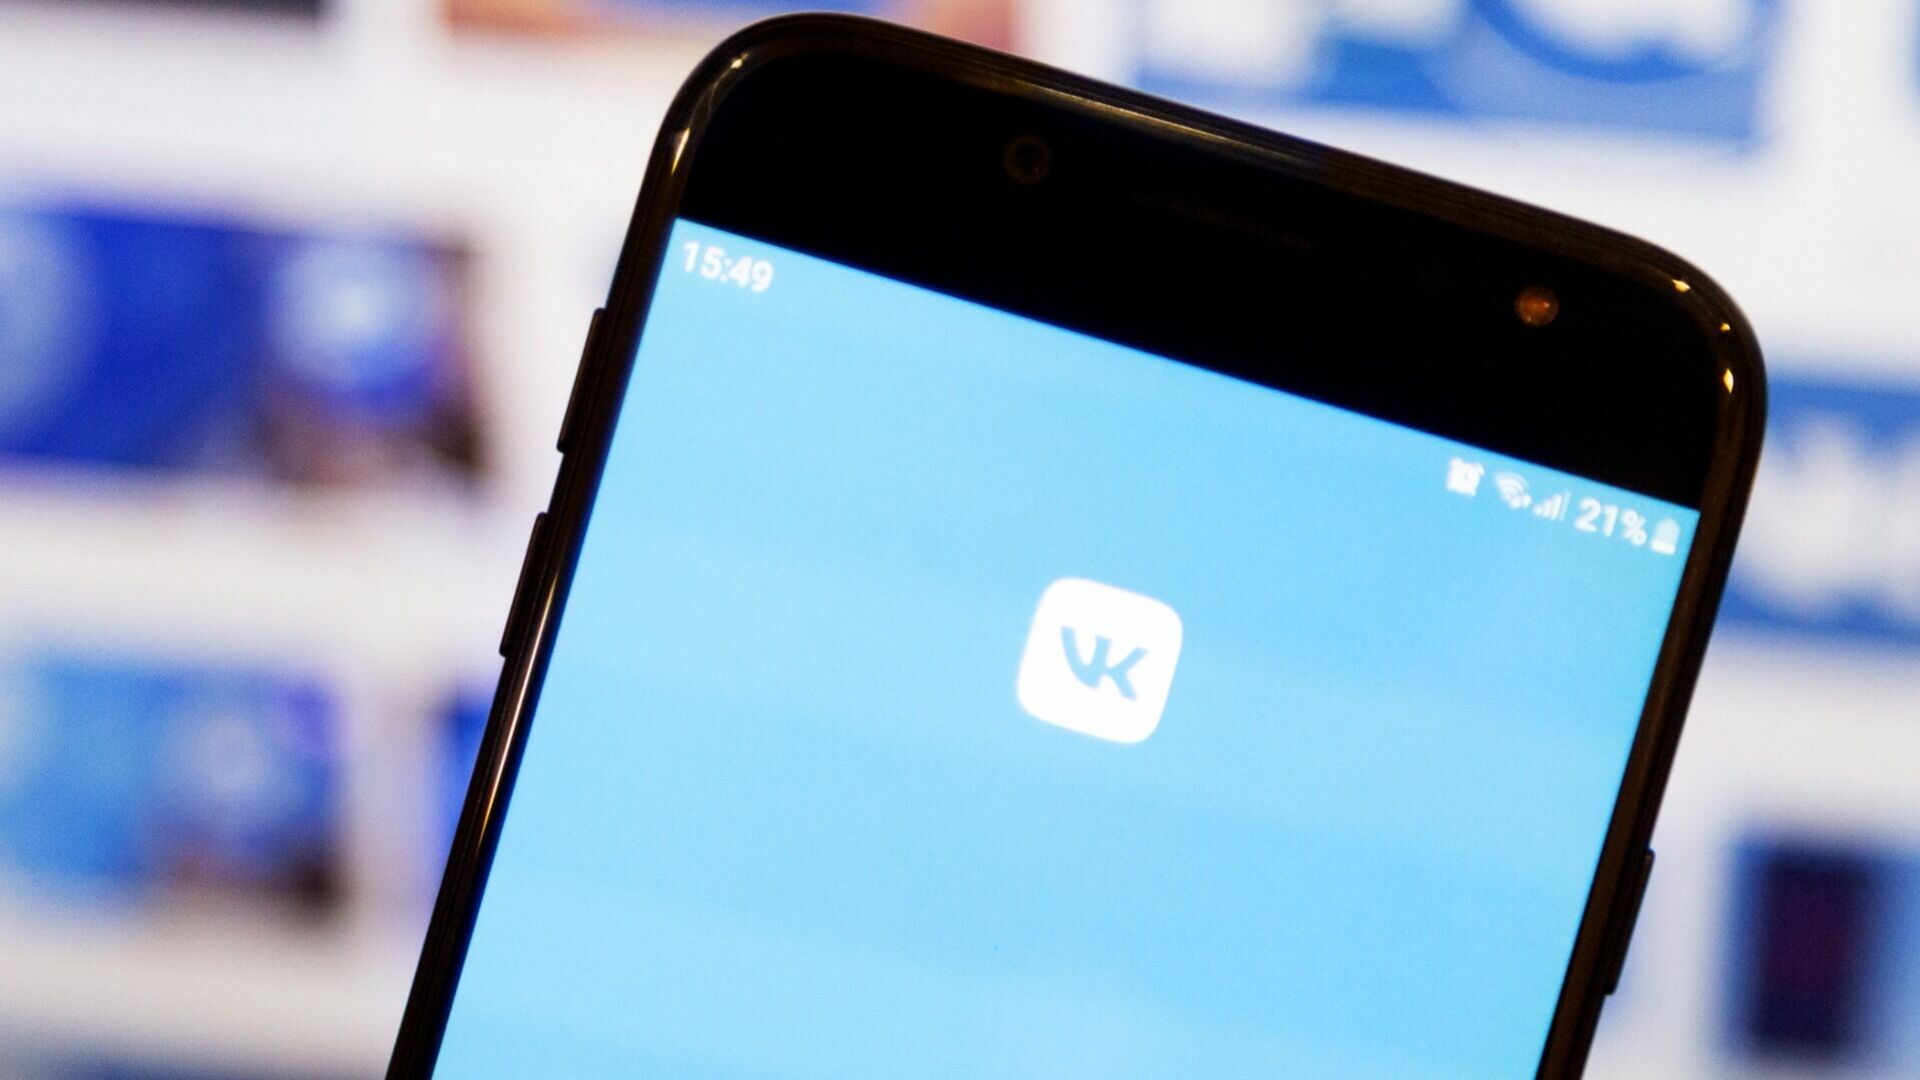 ВКонтакте установила новые рекорды по аудитории и её активности